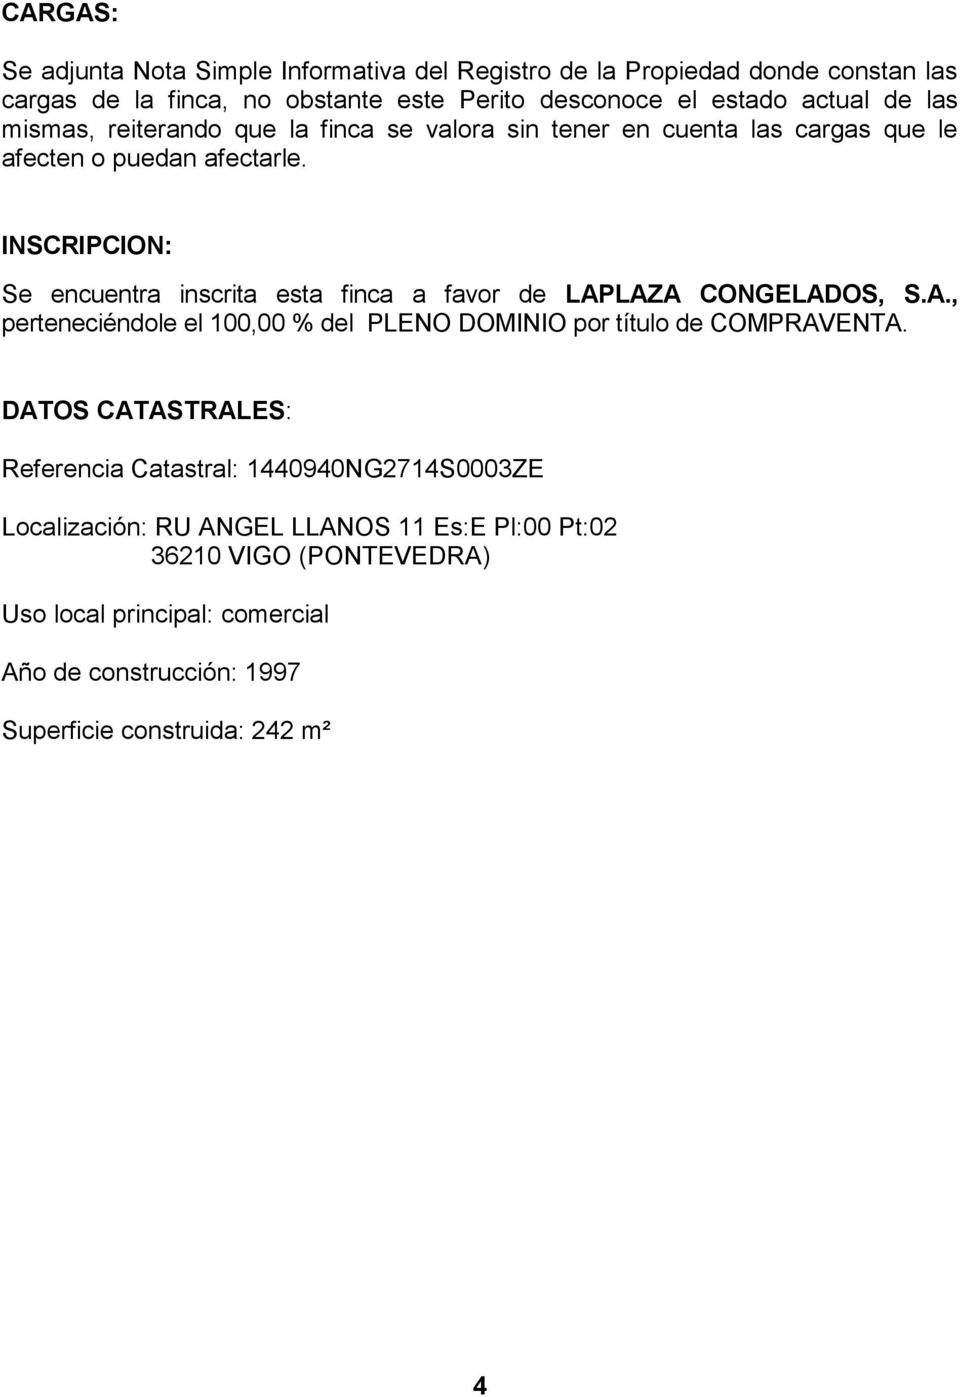 INSCRIPCION: Se encuentra inscrita esta finca a favor de LAPLAZA CONGELADOS, S.A., perteneciéndole el 100,00 % del PLENO DOMINIO por título de COMPRAVENTA.